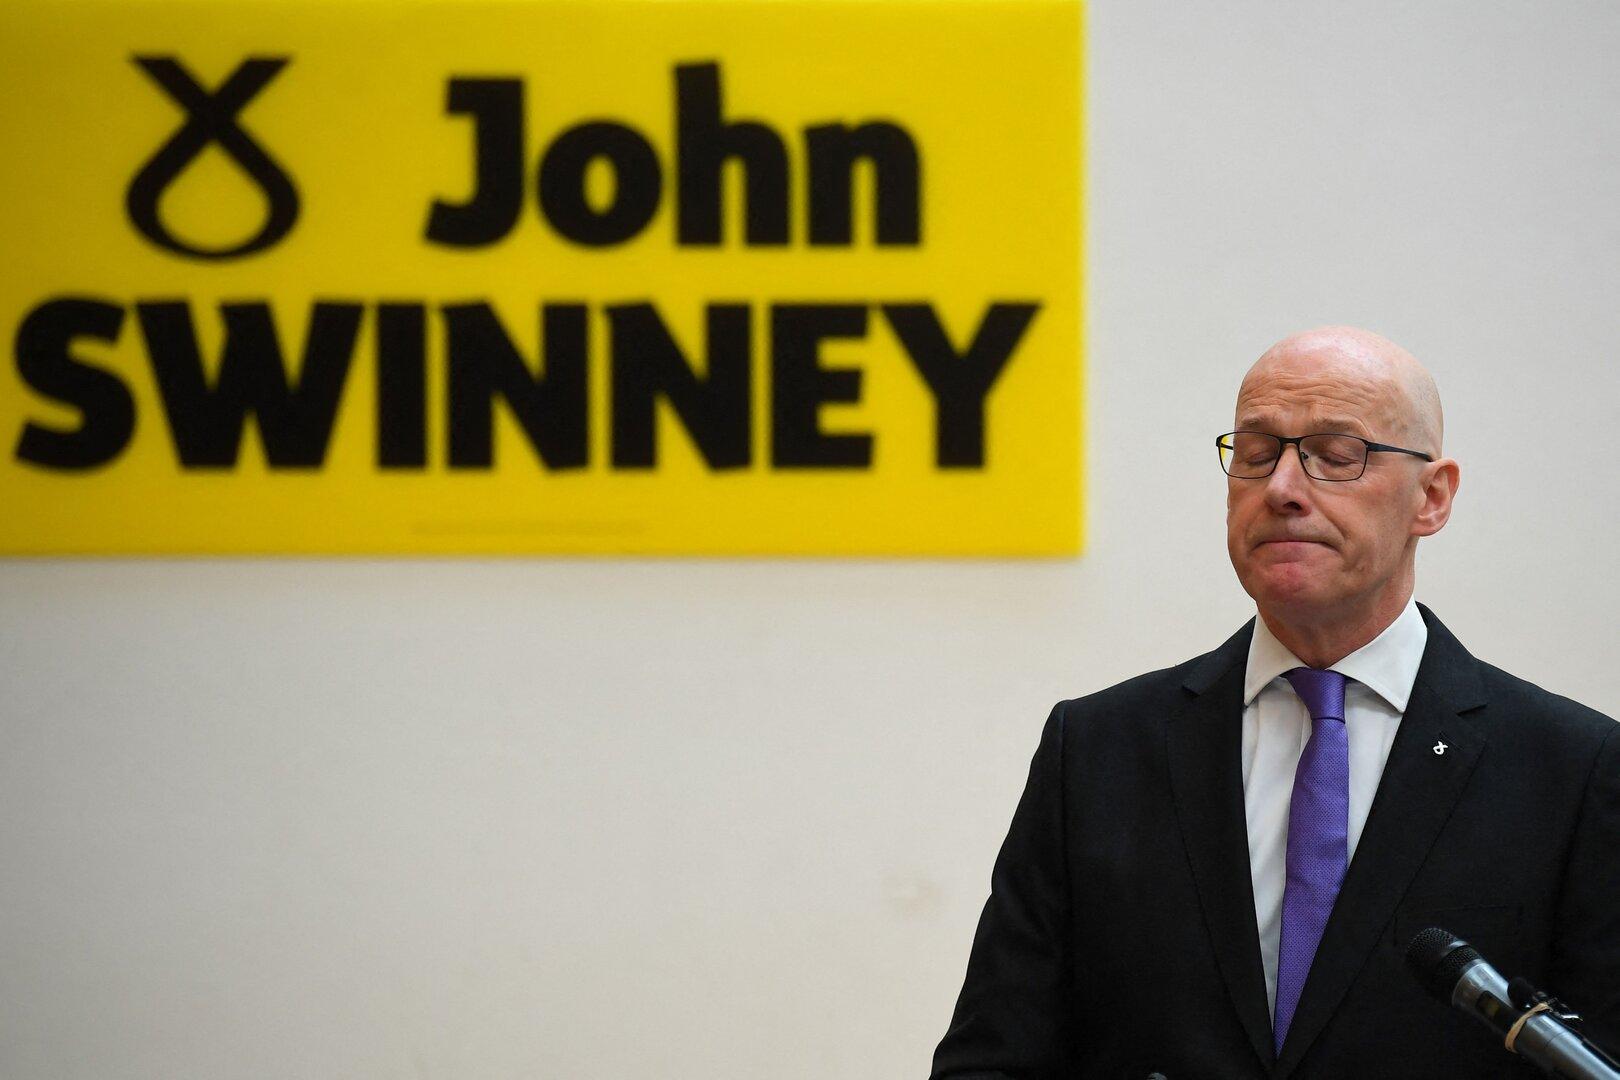 John Swinney zu neuem Chef der schottischen Regierungspartei ernannt